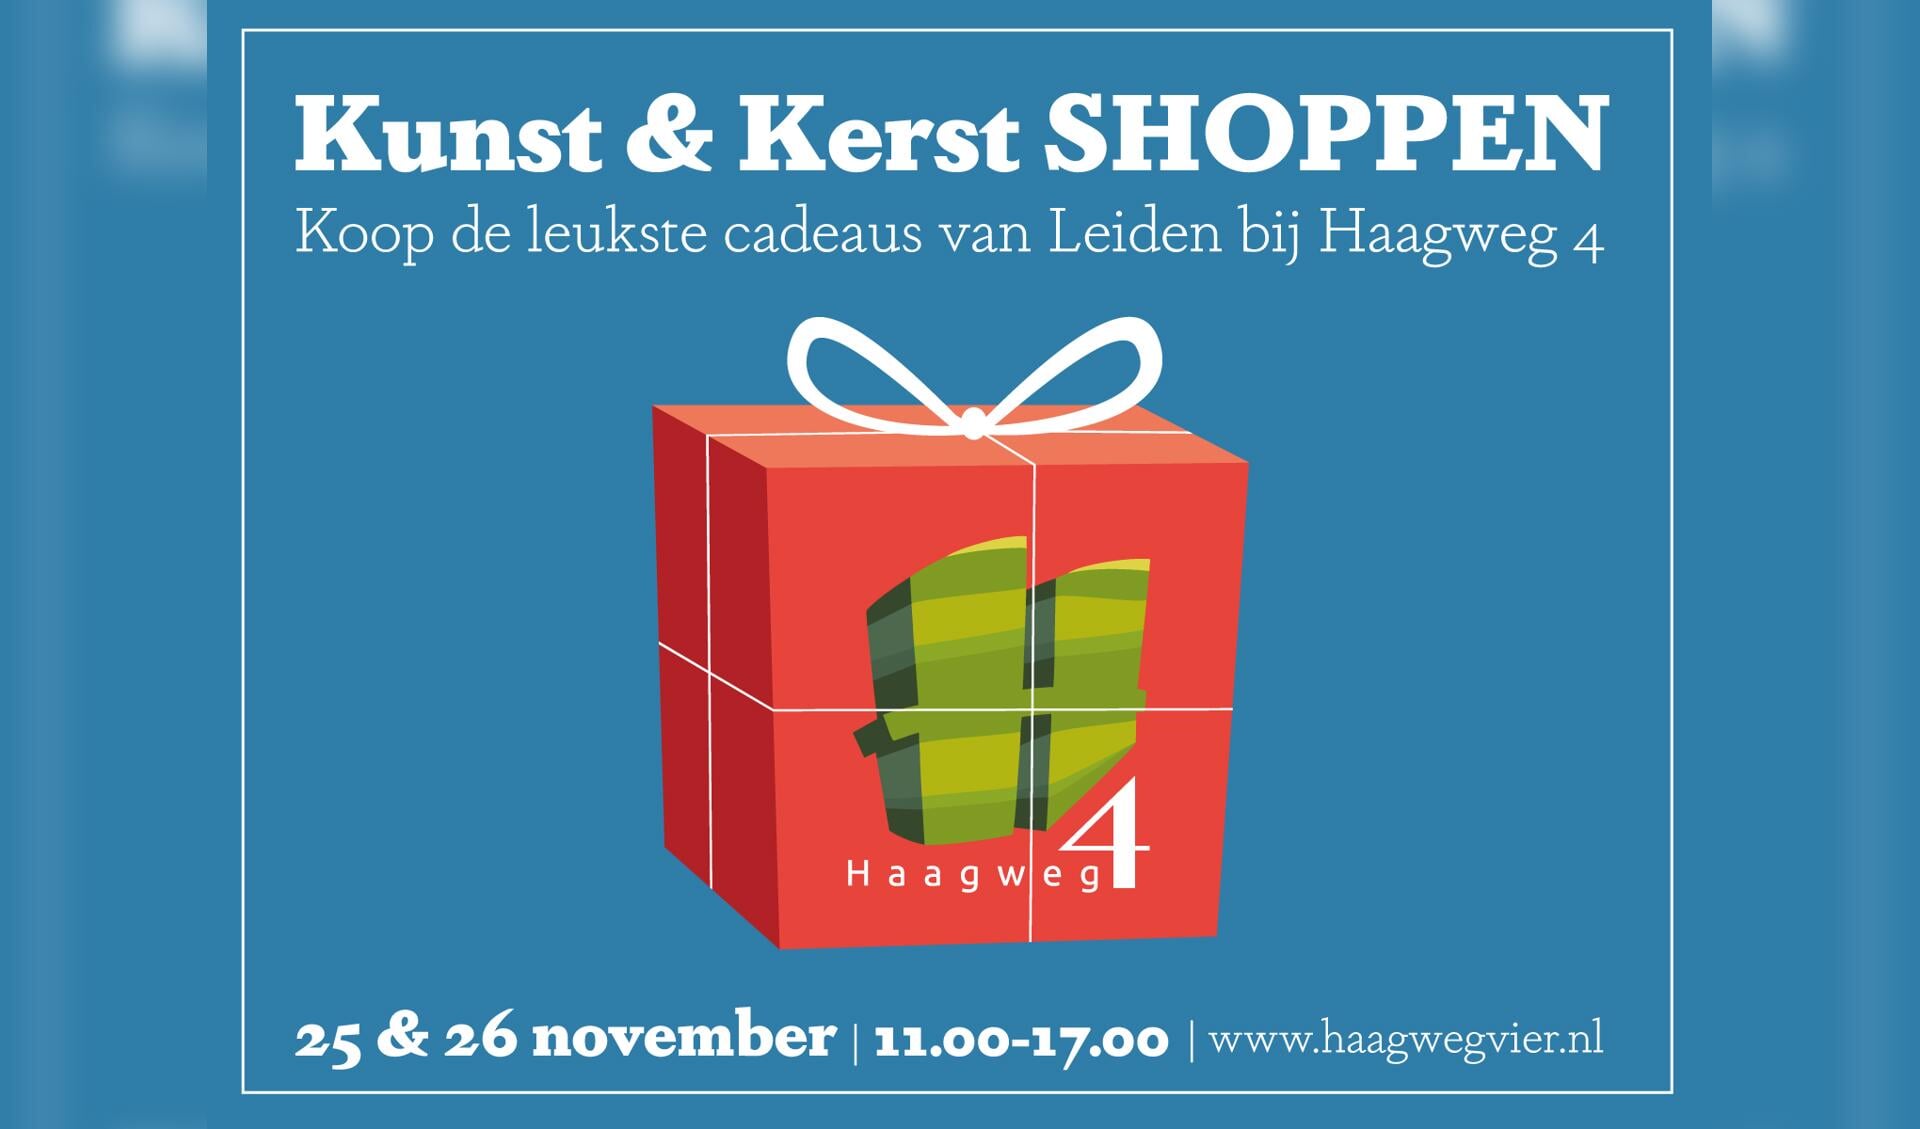 Unieke Kunst, design, workshops, lekkers en gezelligheid bij het KUNST EN KERST SHOPPEN op HAAGWEG 4 in Leiden